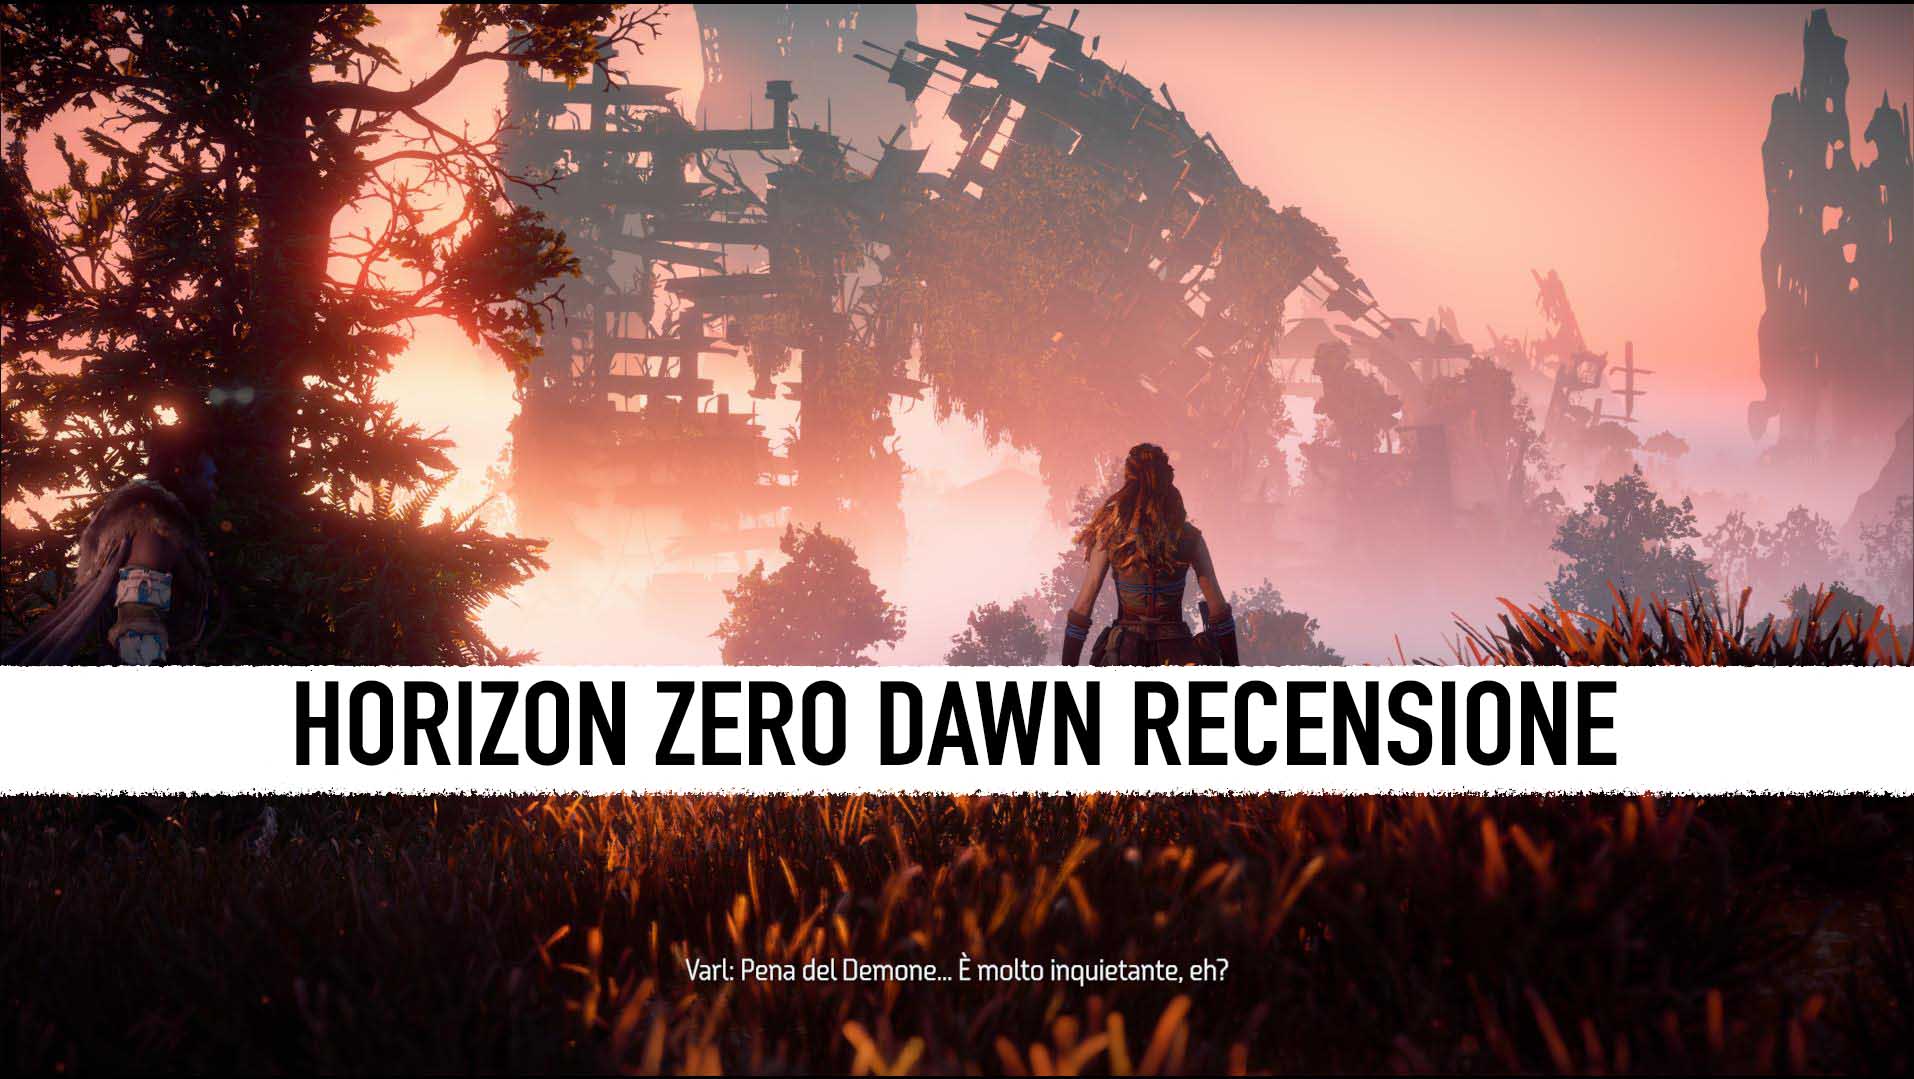 La recensione della versione PC di Horizon Zero Dawn. L'emozione in ultra-wide thumbnail